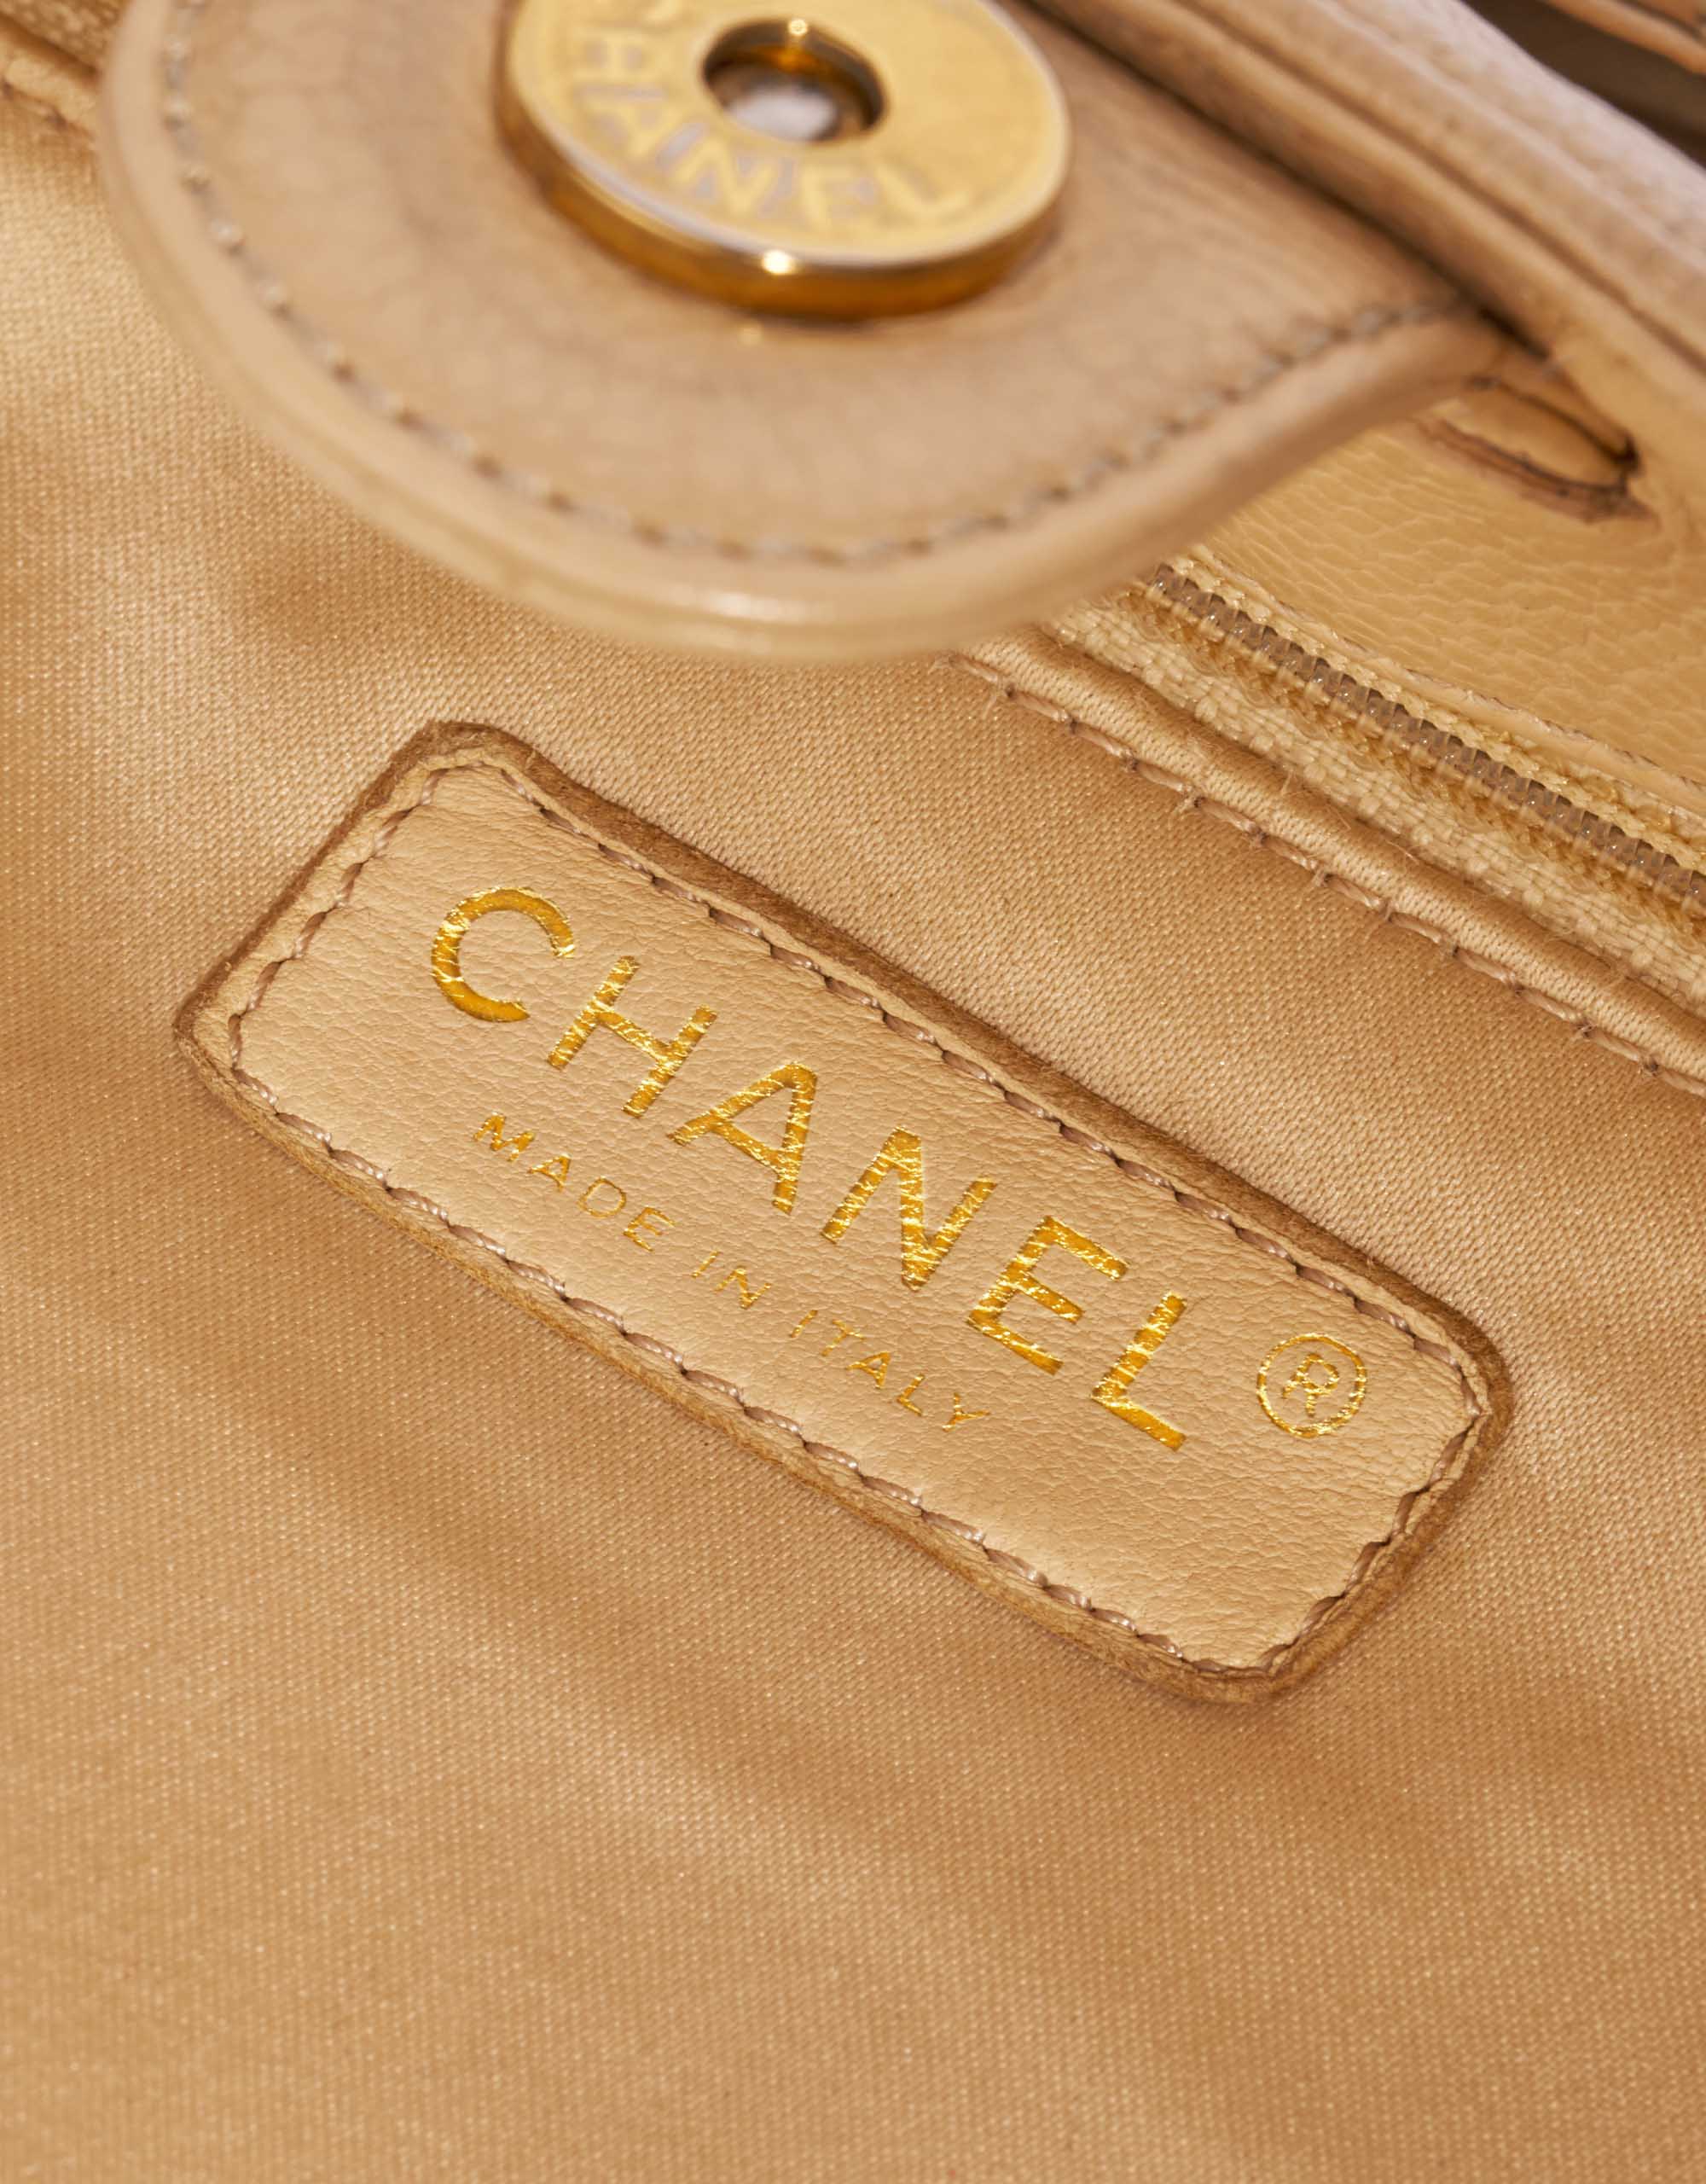 Gebrauchte Chanel Tasche Shopping Tote PST Caviar-Leder Beige Beige Logo | Verkaufen Sie Ihre Designer-Tasche auf Saclab.com